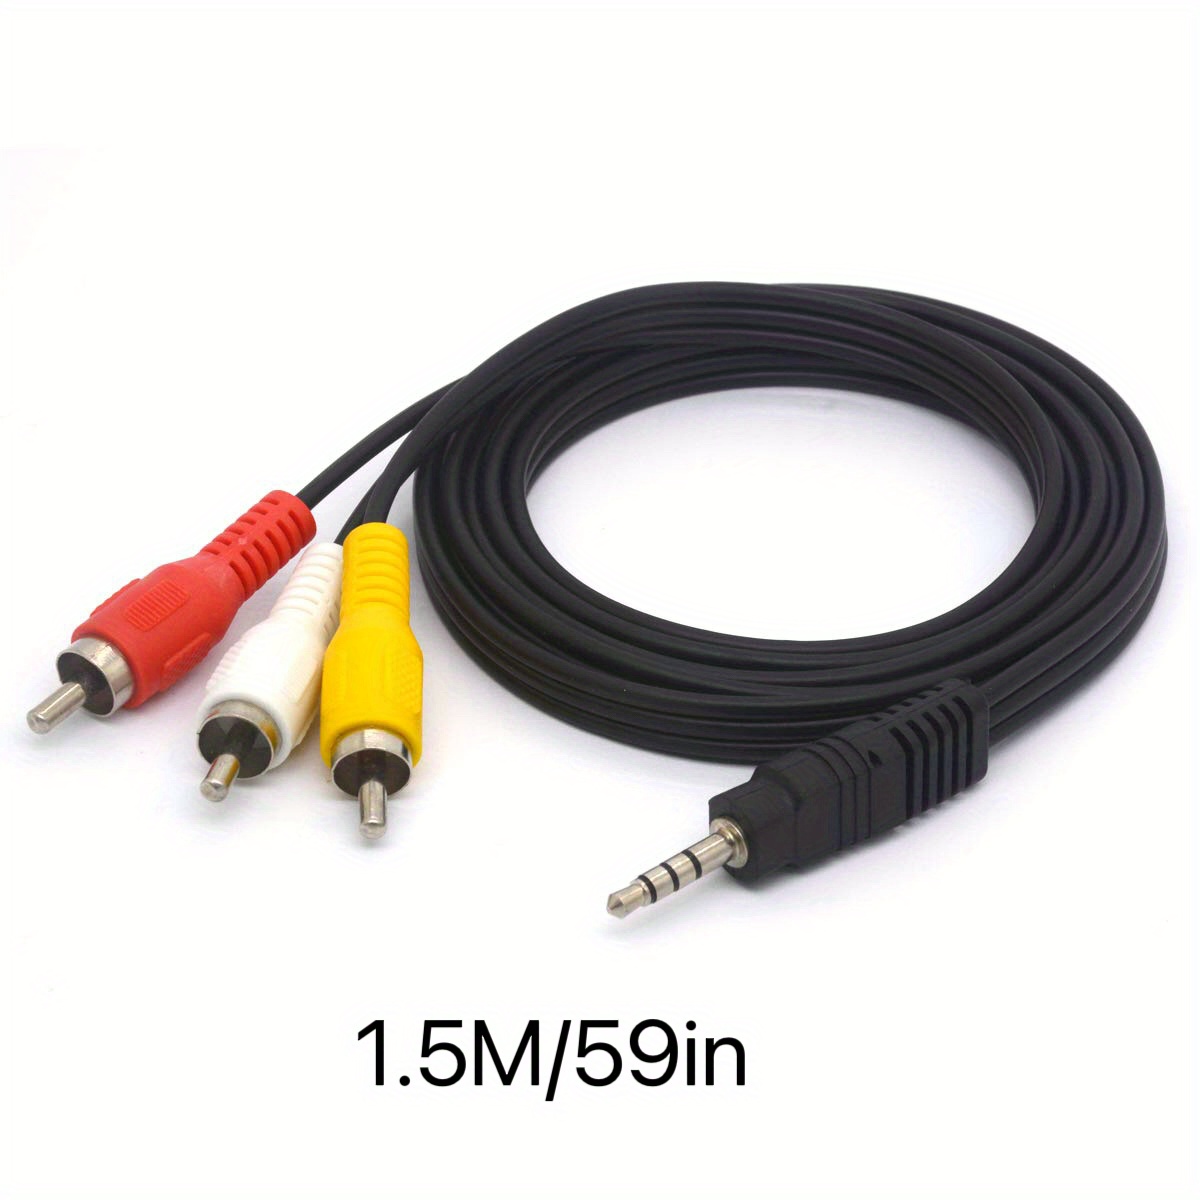 Cable de audio Jack 3,5 mm estéreo macho / 2 RCA machos (3 metros)